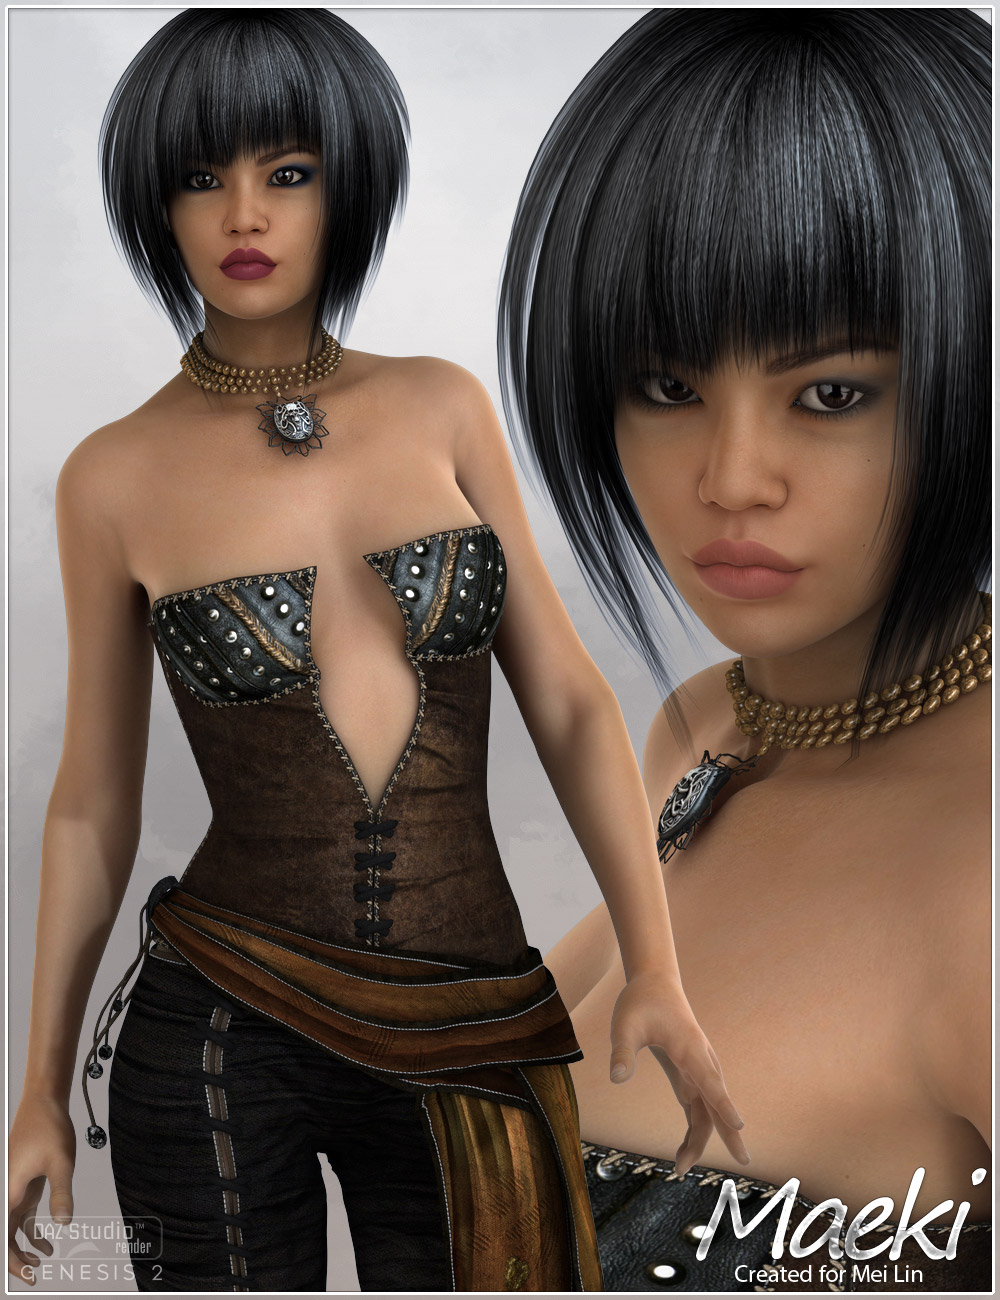 Maeki for Mei Lin 6 by: Fred Winkler ArtSabby, 3D Models by Daz 3D